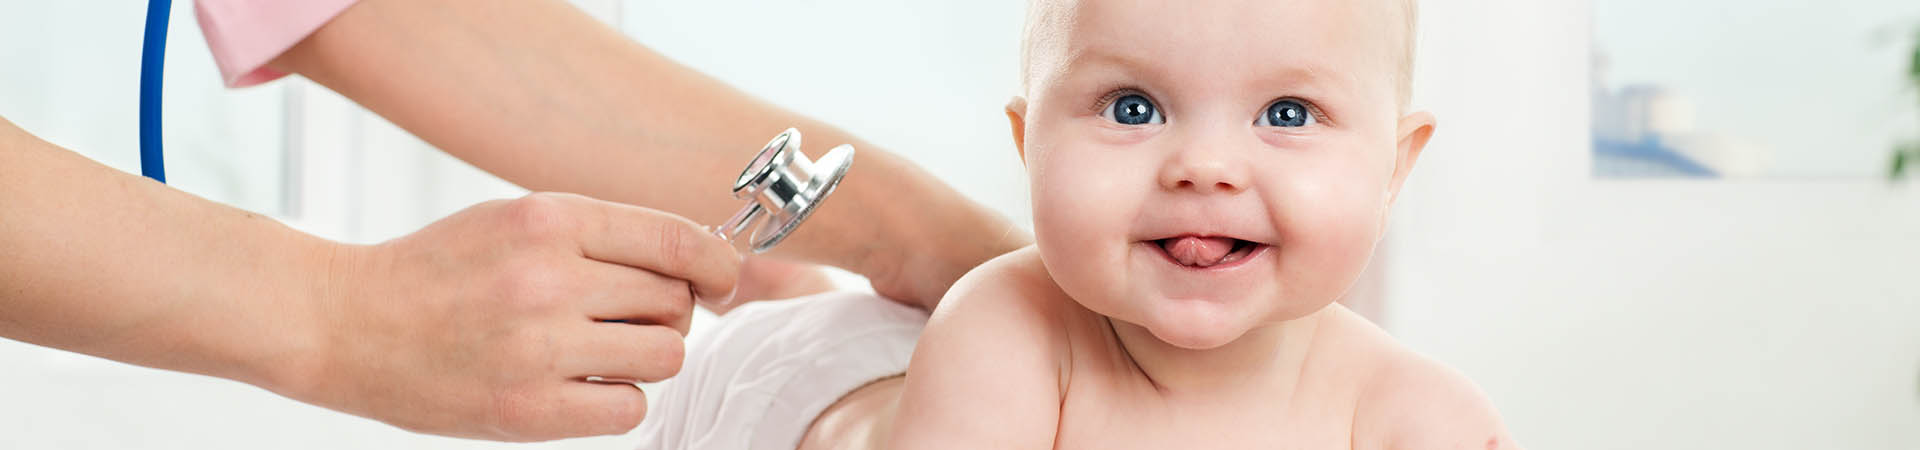 Headerbild Aus- und Weiterbildung in der Paediatrie, Ein auf dem Bauch liegendes Baby wird mit dem Stethoskop abgehört